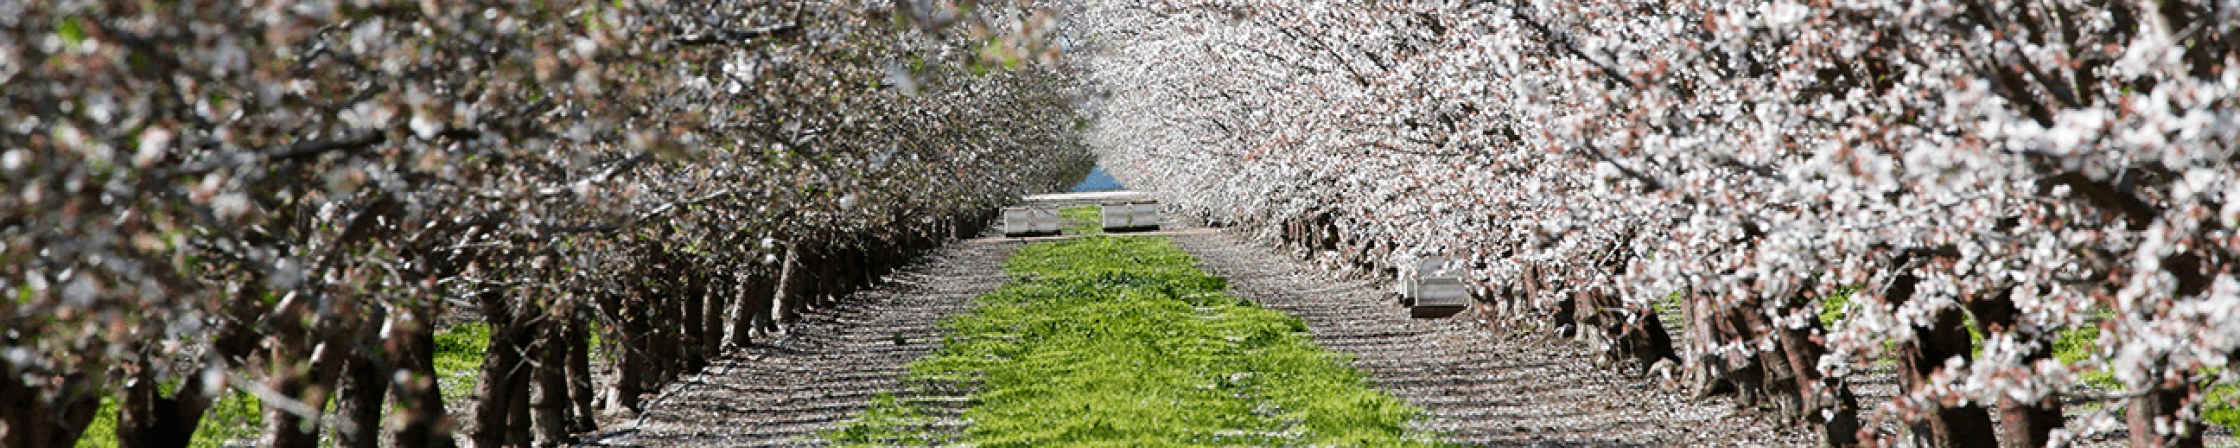 Almond Orchard in Blossum